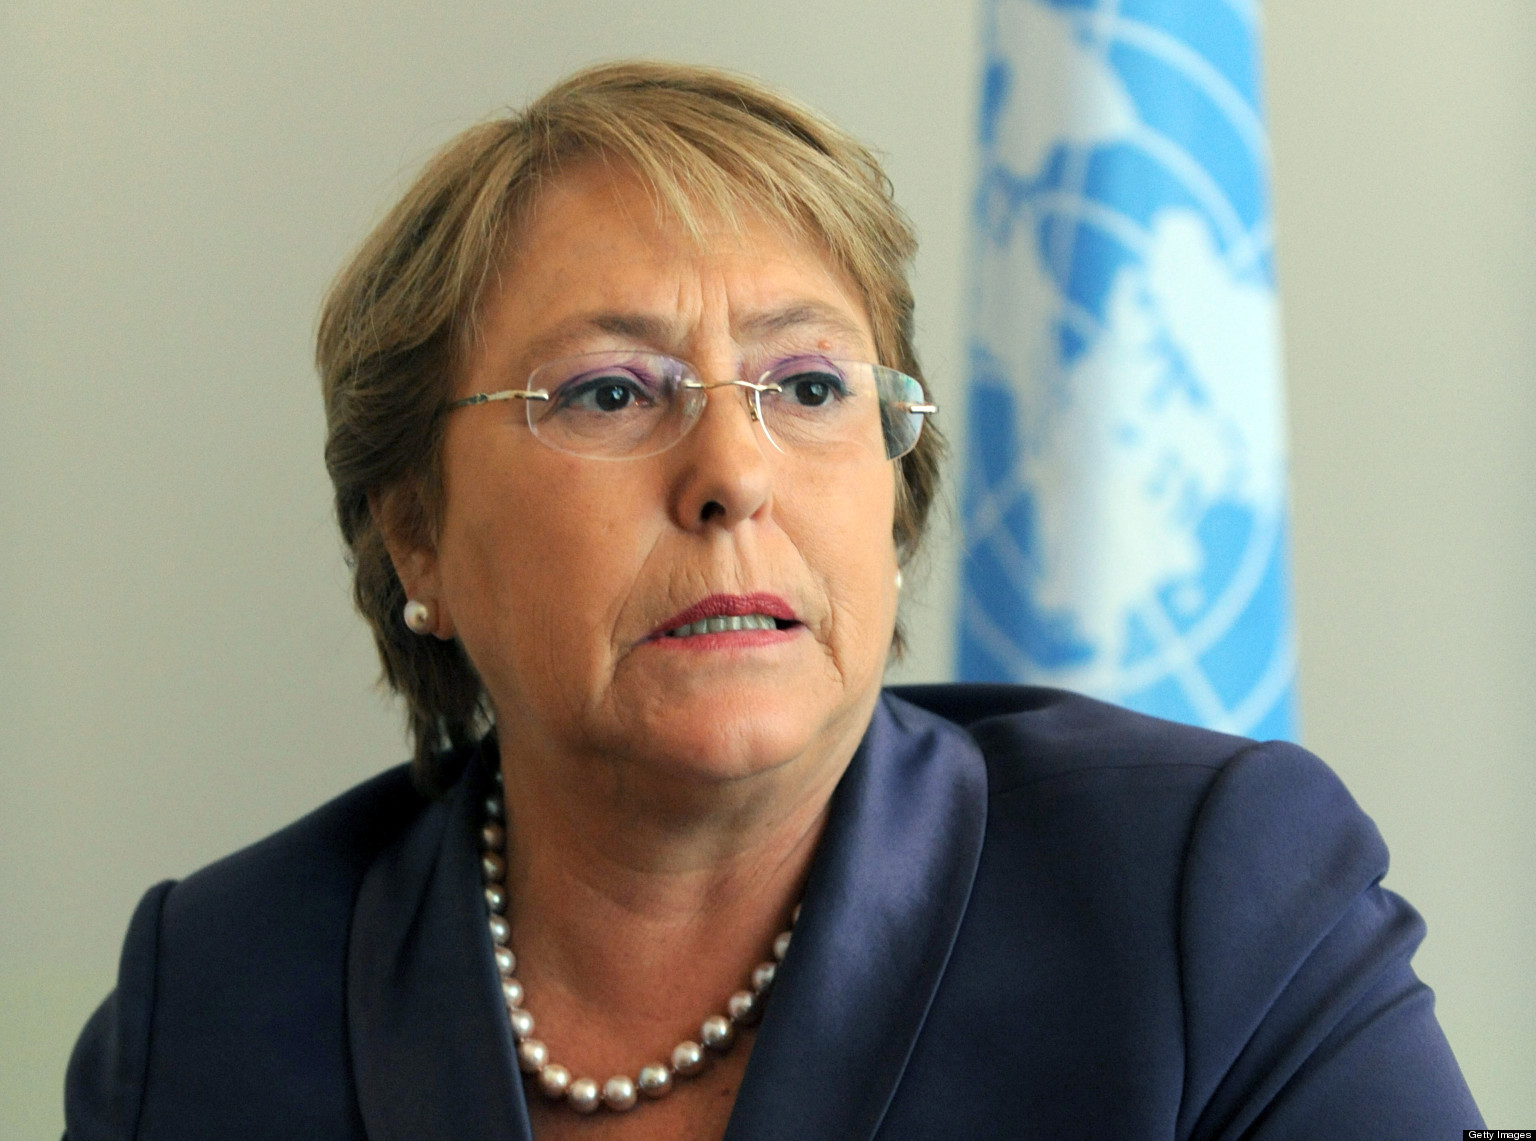 Adolescente le pide autorización a Bachelet para usar inyección letal y morir (Video)